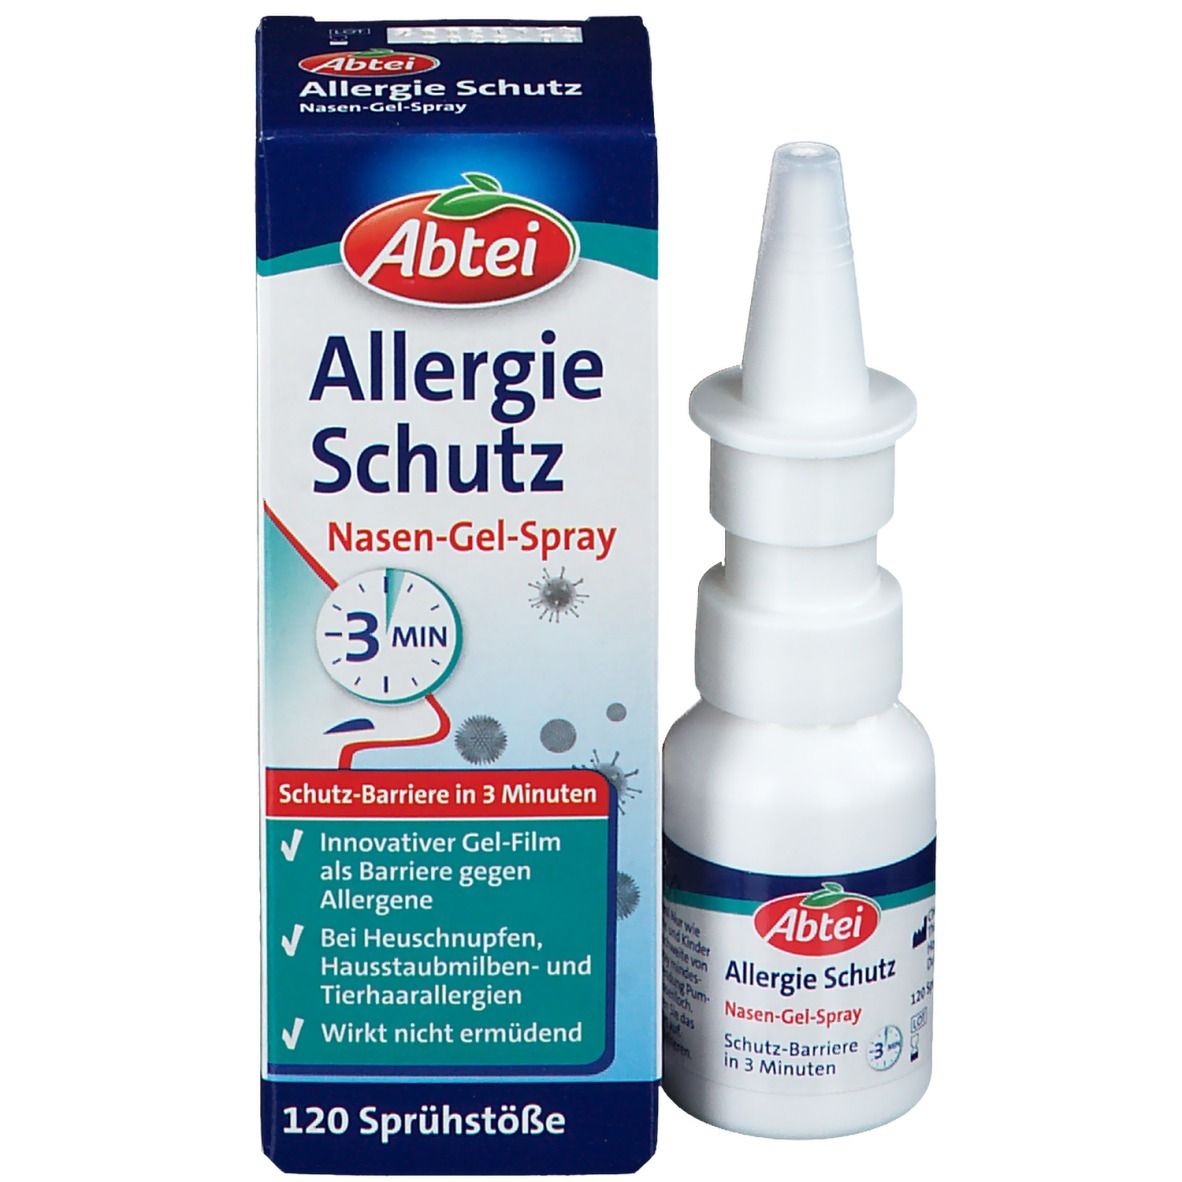 Abtei Allergie Schutz Nasen-Gel-Spray